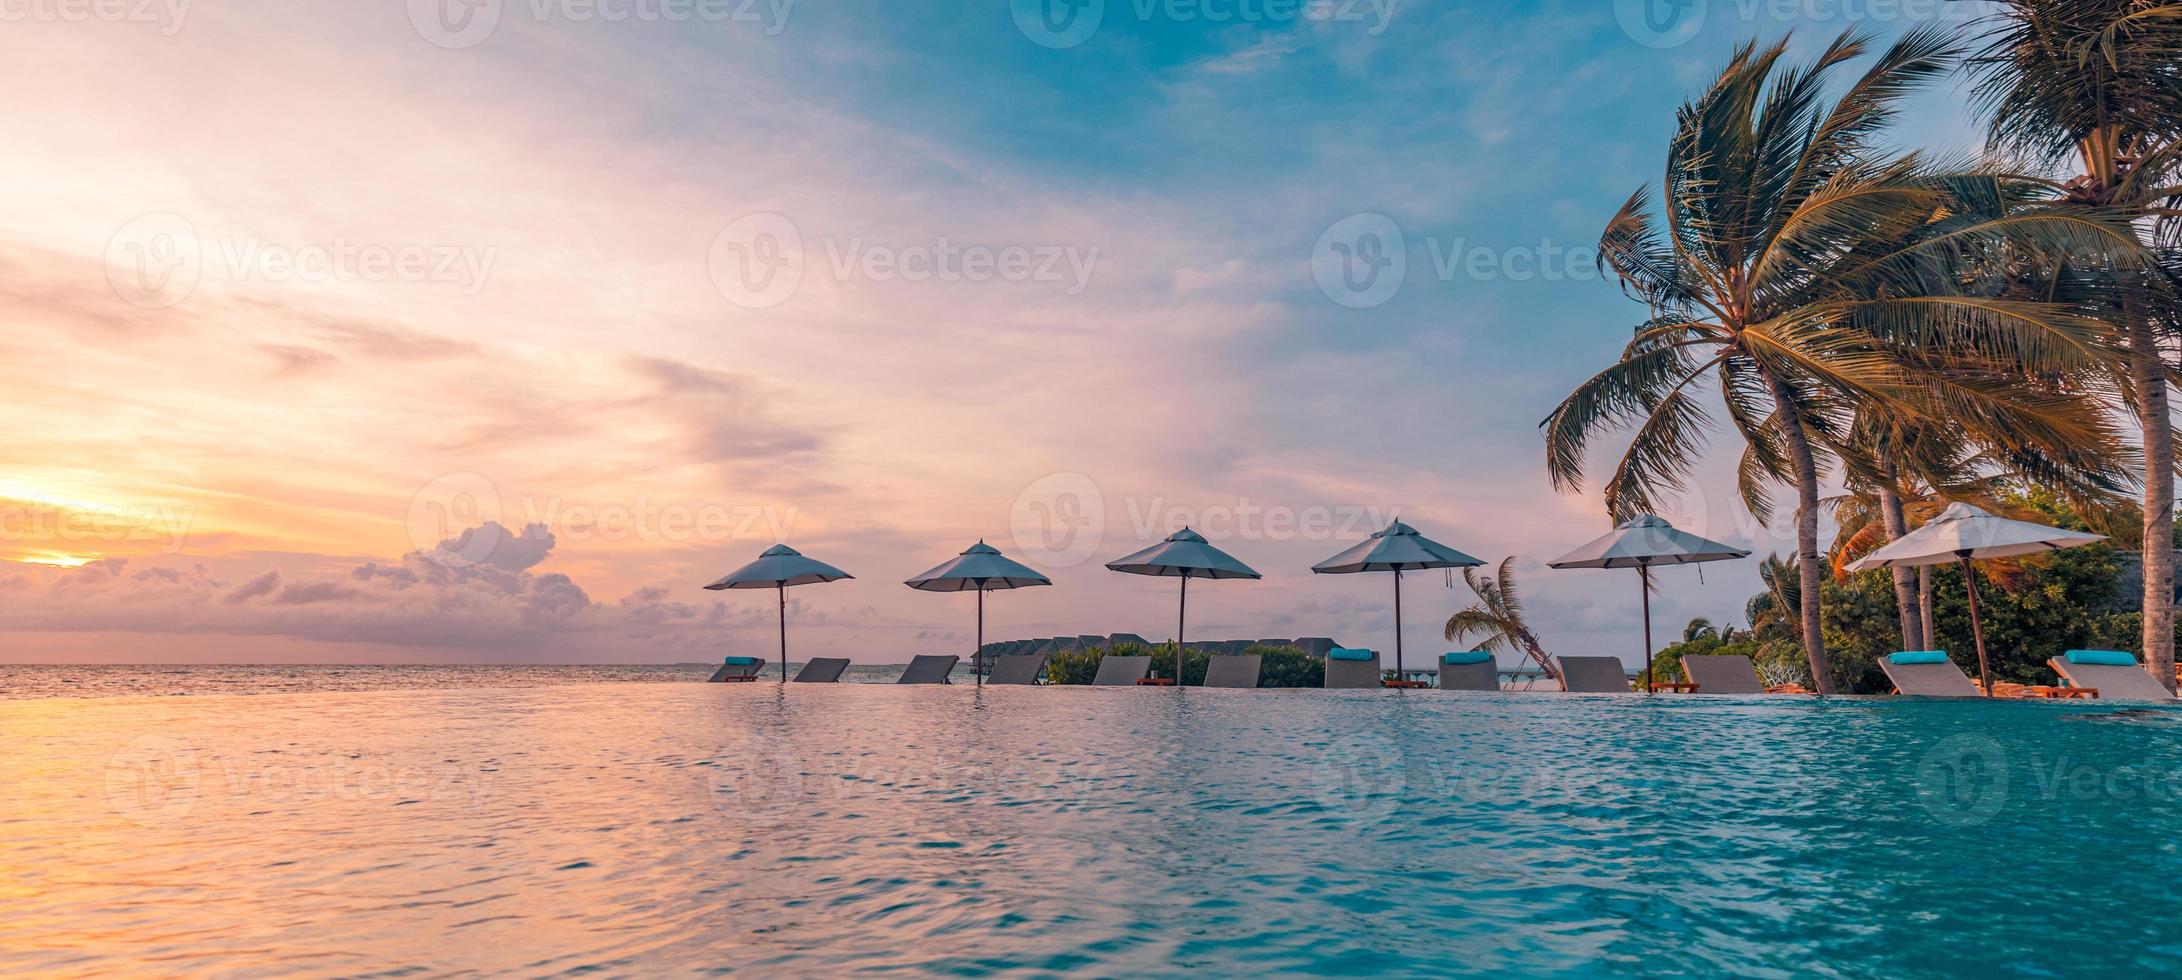 buitenshuis luxe zonsondergang over- oneindigheid zwembad zwemmen zomer aan het strand hotel toevlucht, tropisch landschap. mooi rustig strand vakantie vakantie achtergrond. verbazingwekkend eiland zonsondergang strand visie, palm bomen foto